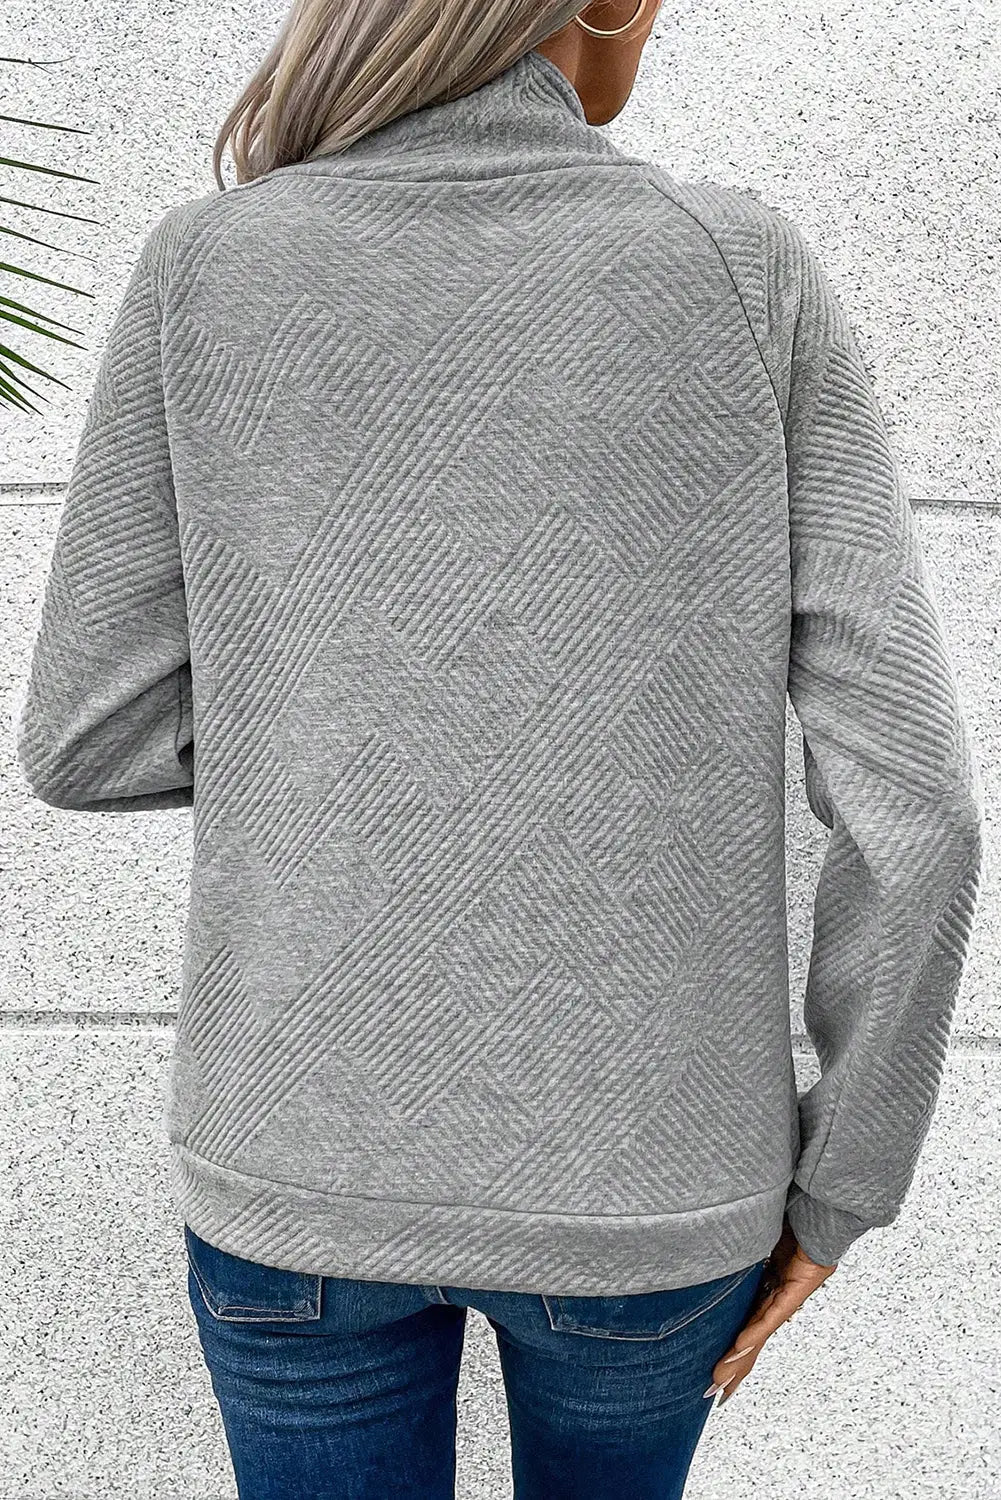 Gray asymmetric buttons detail high neck textured sweatshirt - tops